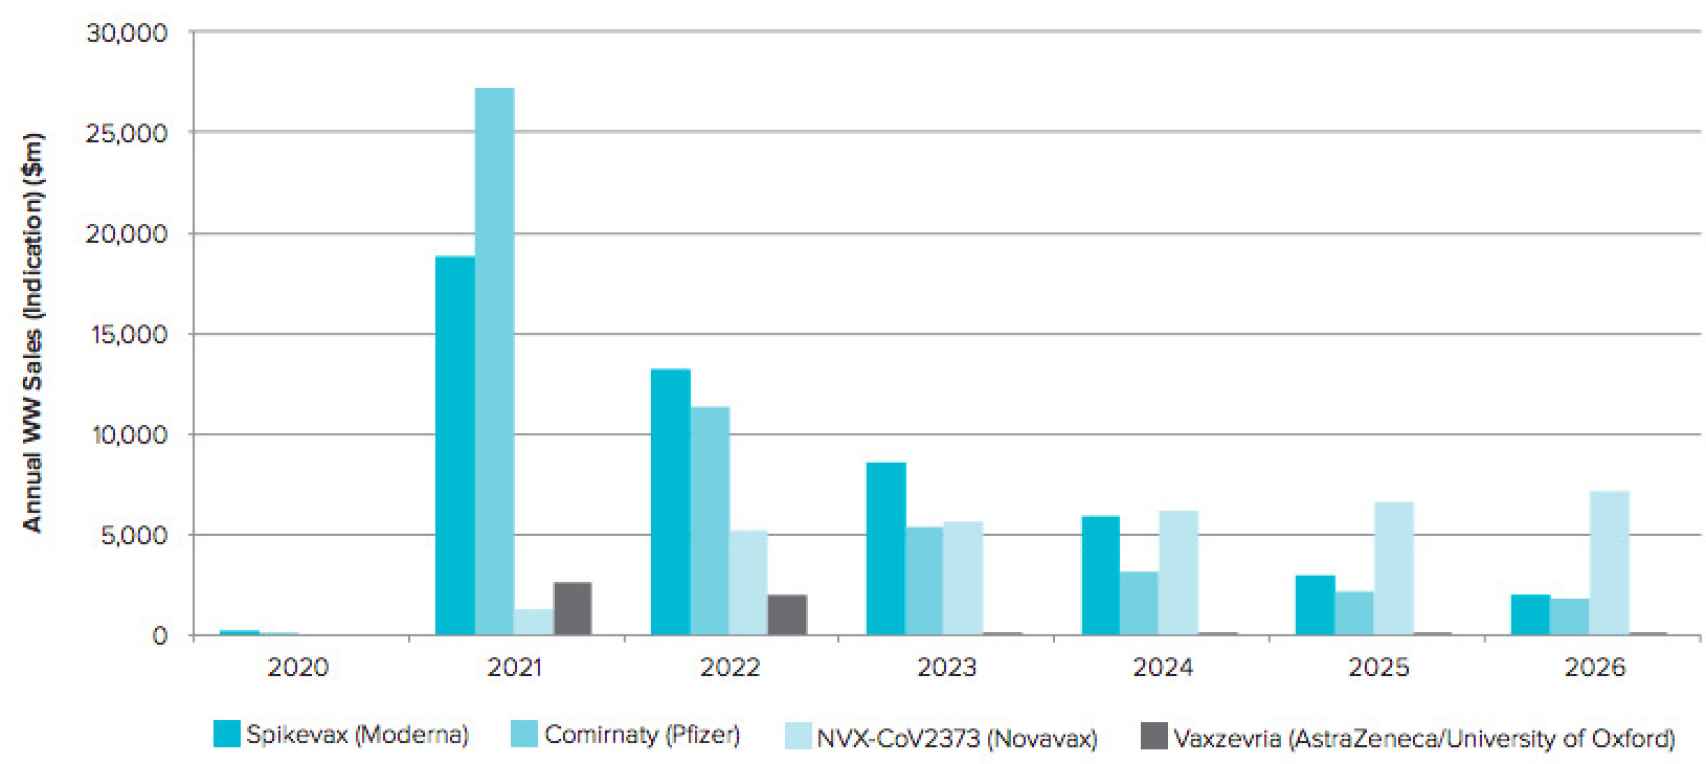 Previsión de ventas de las vacunas contra la Covid-19 hasta 2026. Fuente: Evaluate Pharma.